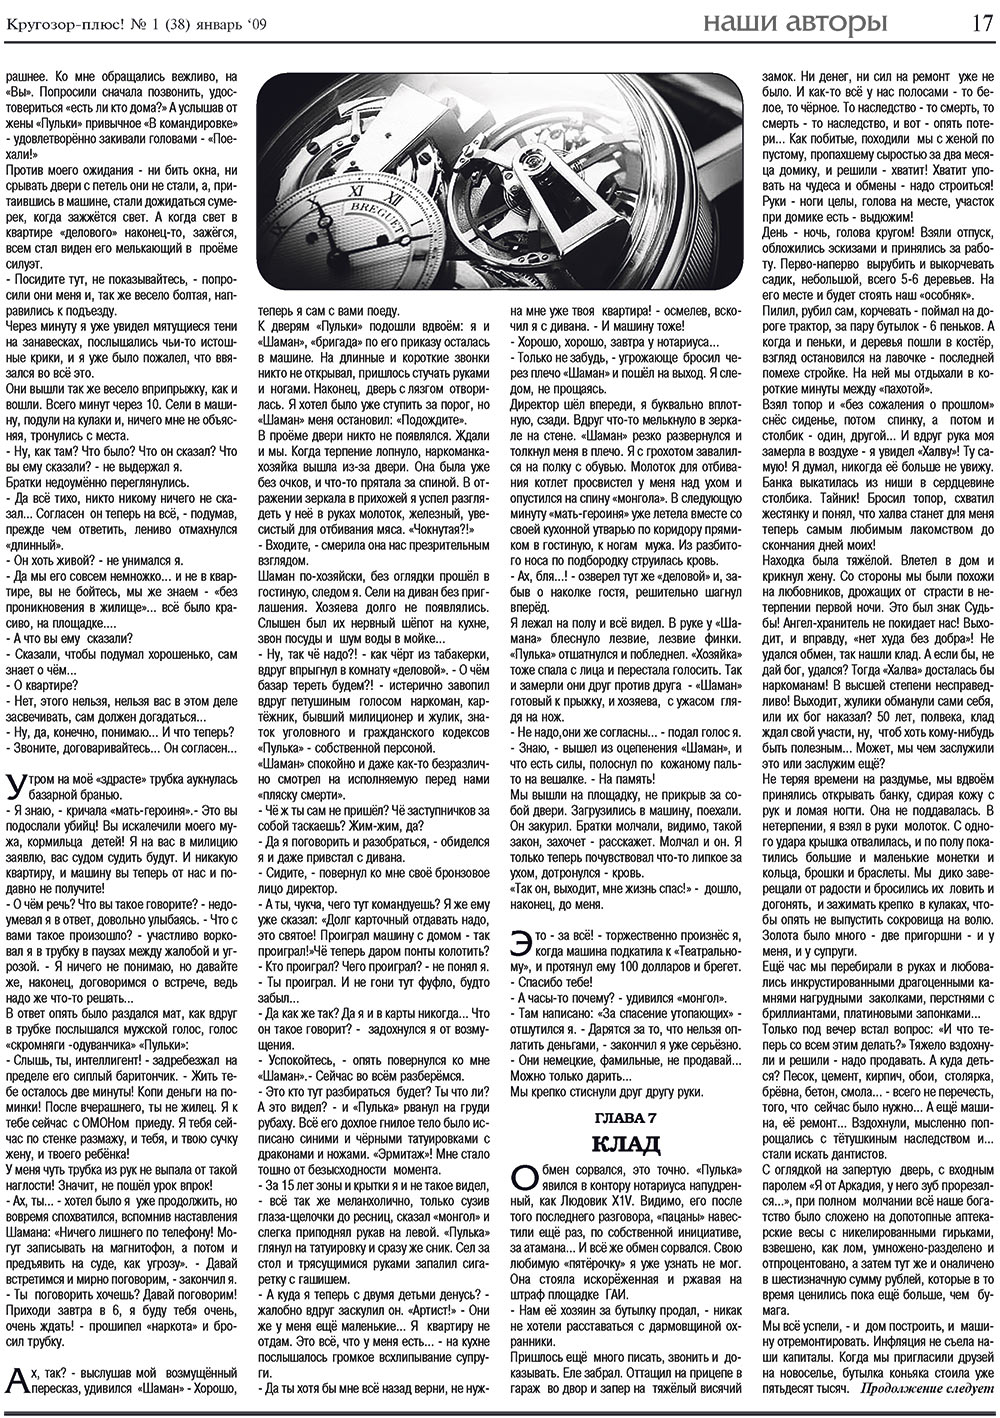 Кругозор плюс!, газета. 2009 №1 стр.17